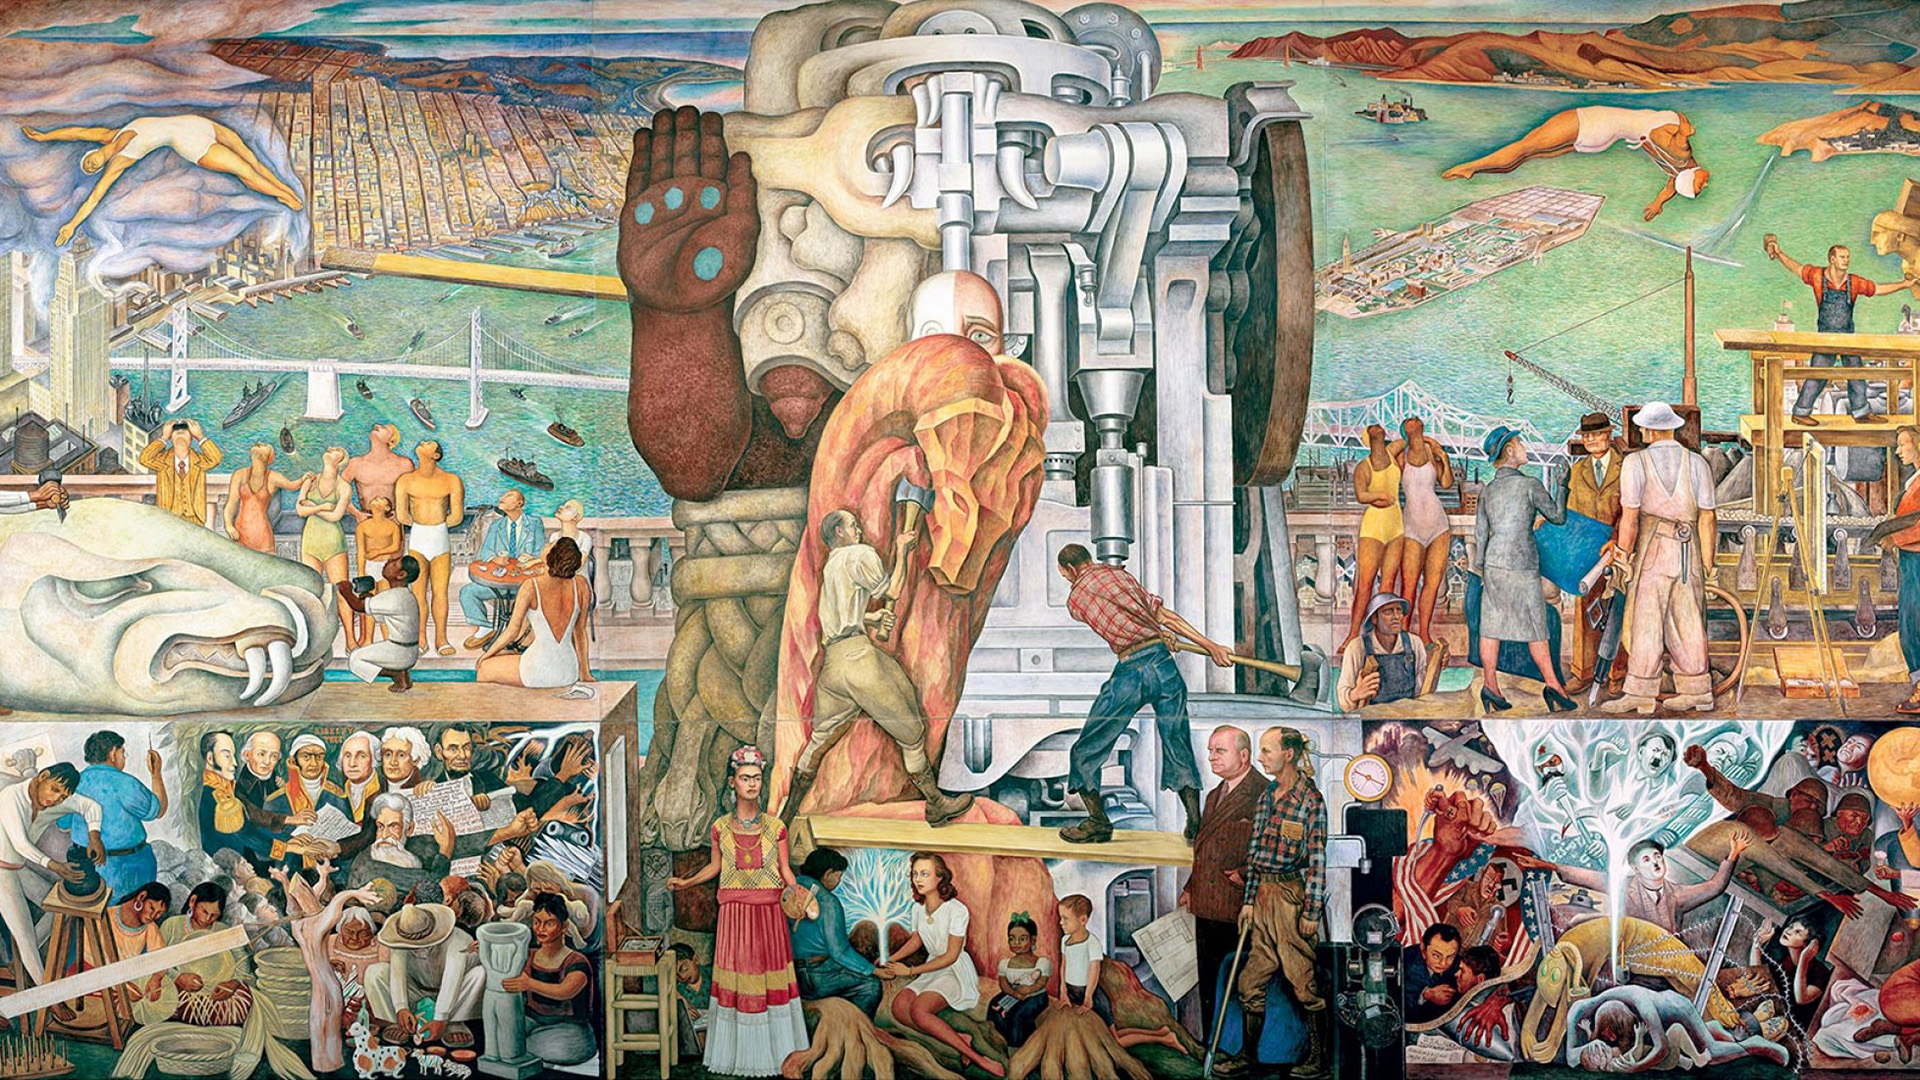 Trasladan un inmenso mural de Diego Rivera para exhibirlo en San Francisco  